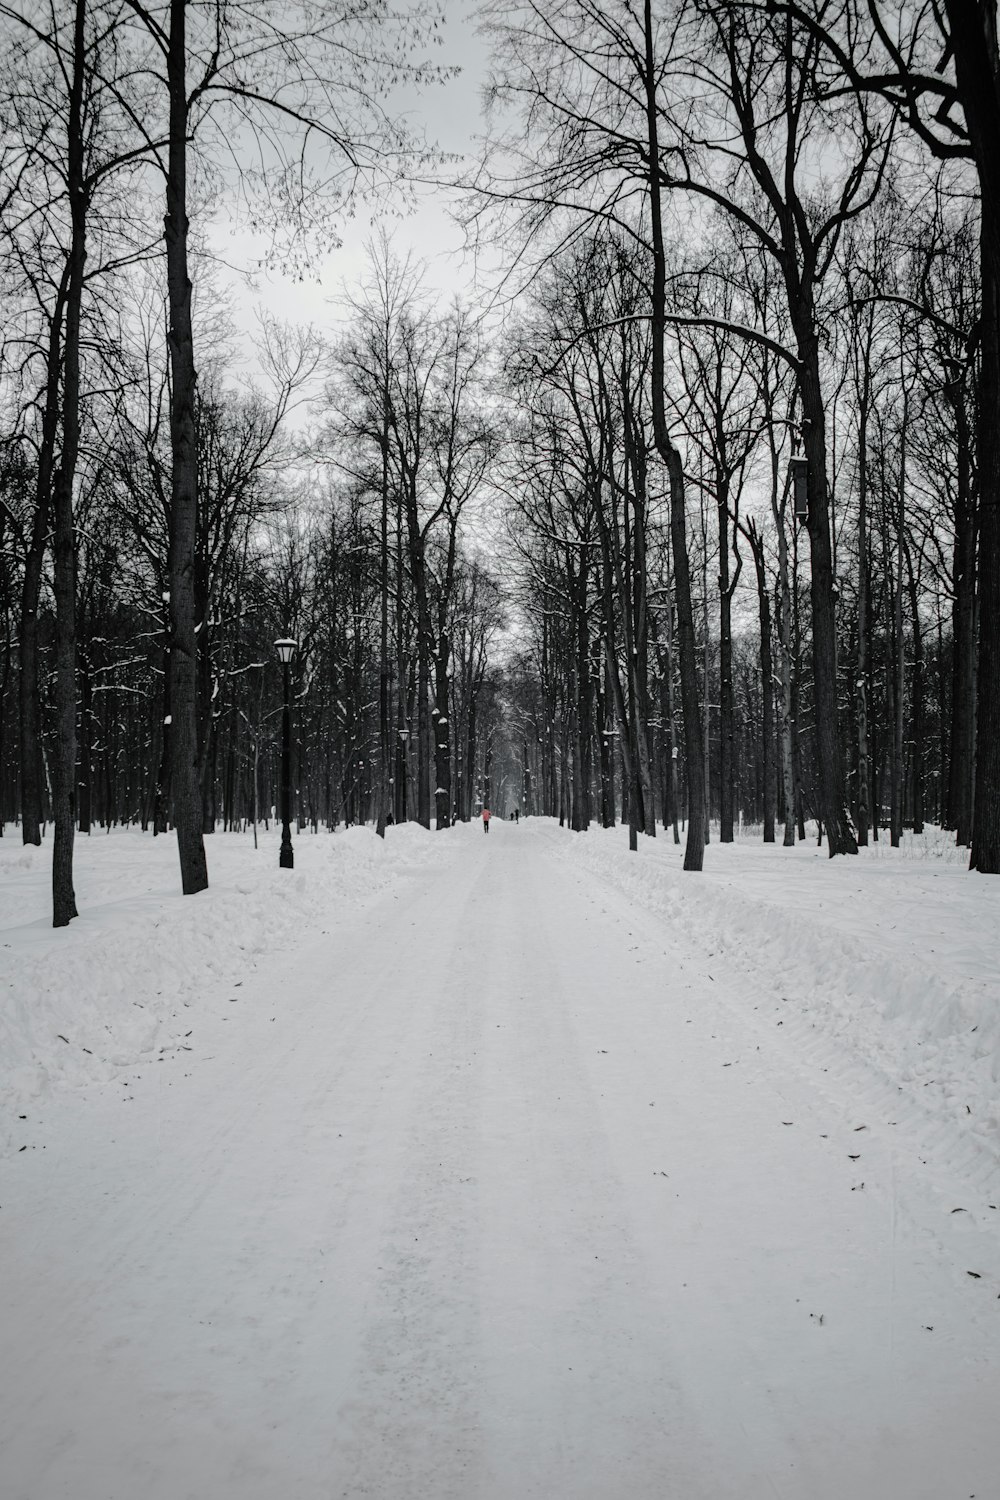 Carretera cubierta de nieve entre árboles desnudos durante el día